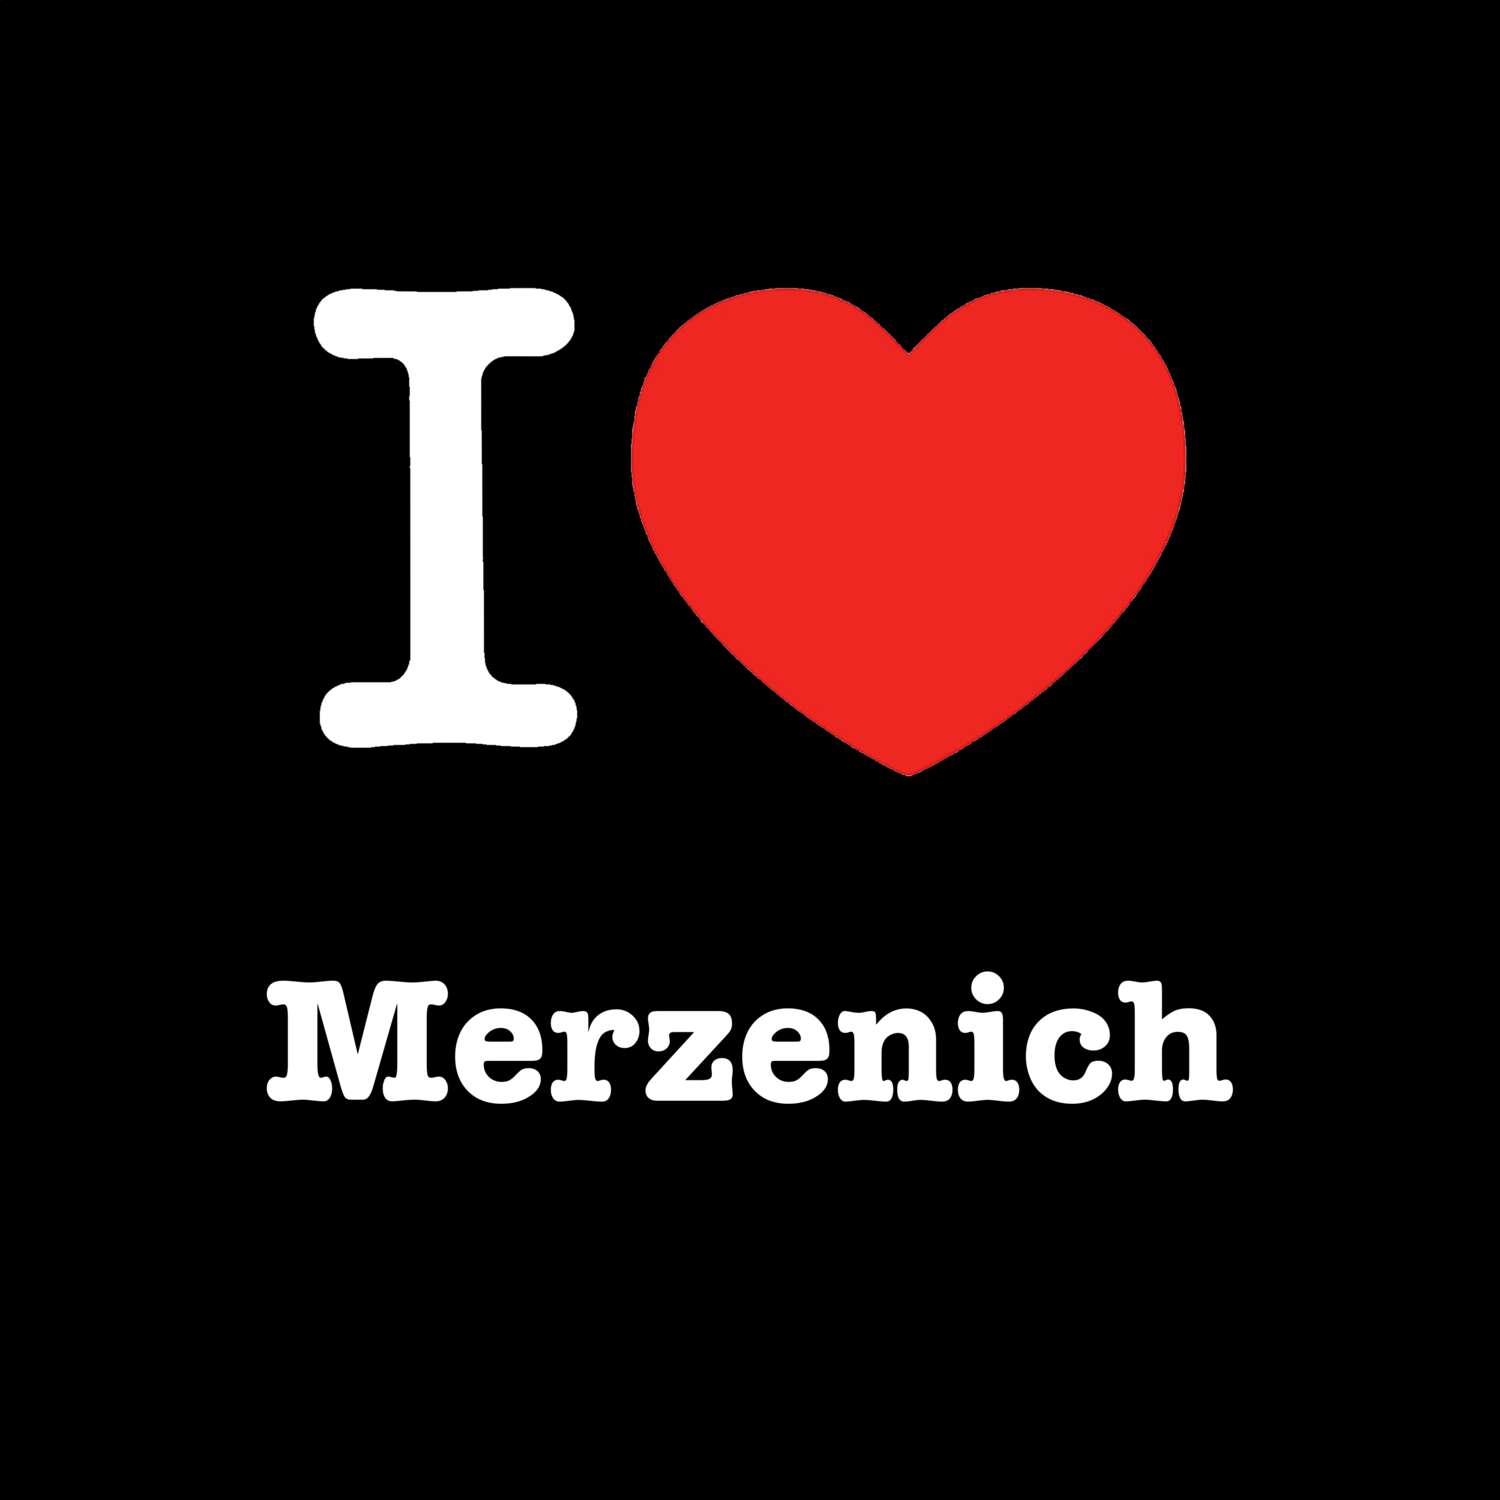 Merzenich T-Shirt »I love«